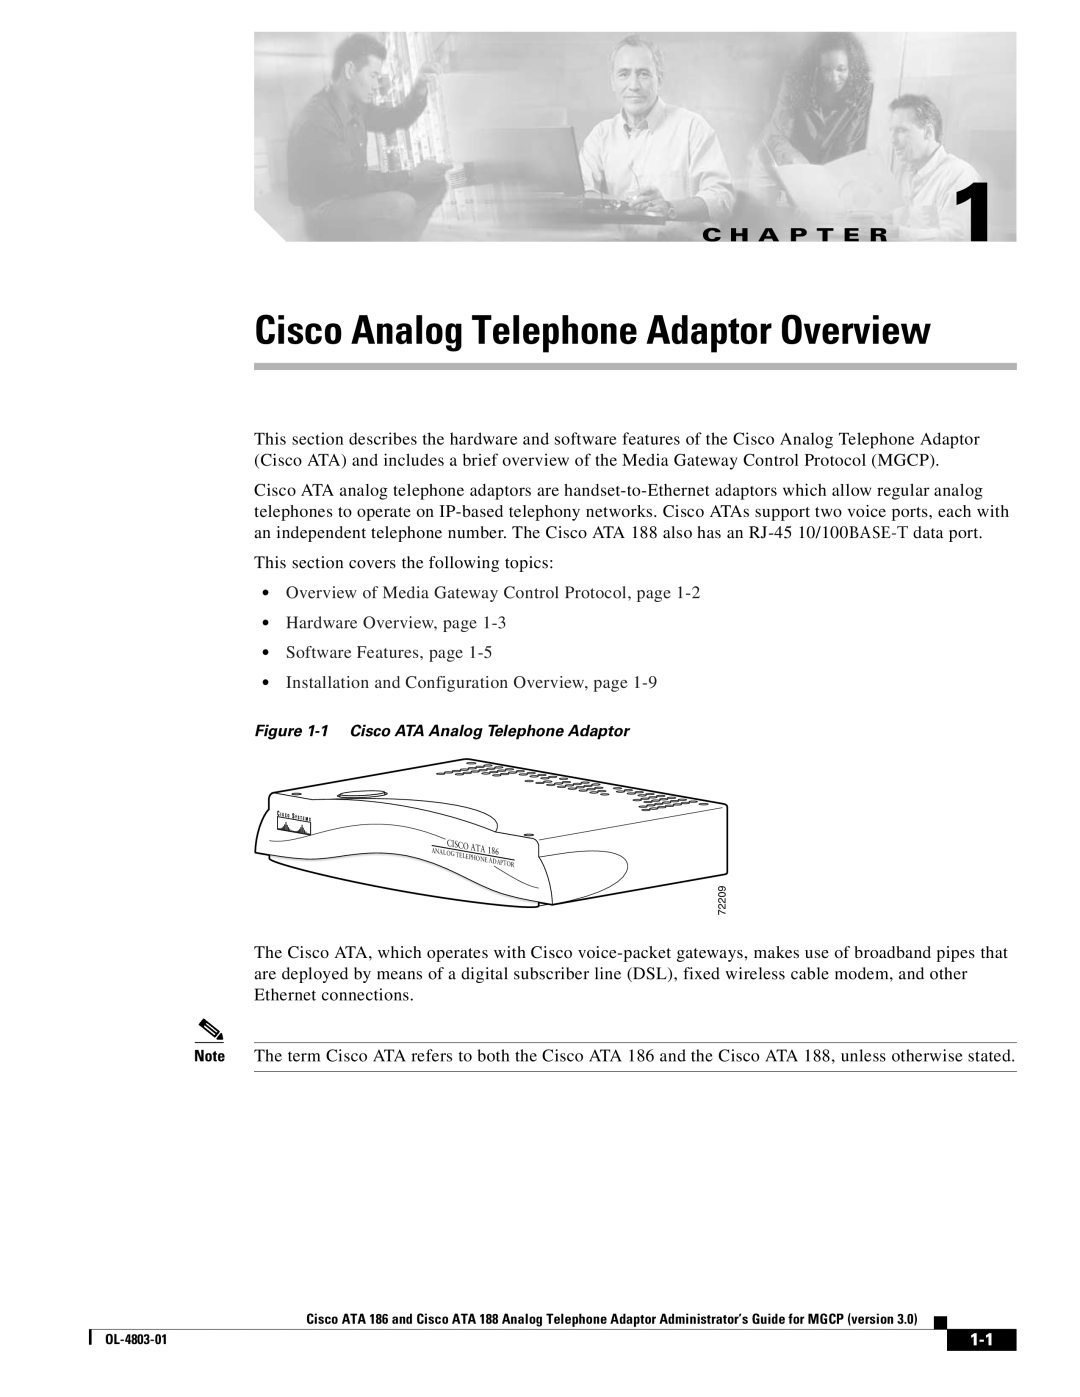 Cisco Systems ATA 188, ATA 186 manual Cisco Analog Telephone Adaptor Overview, C H A P T E R 